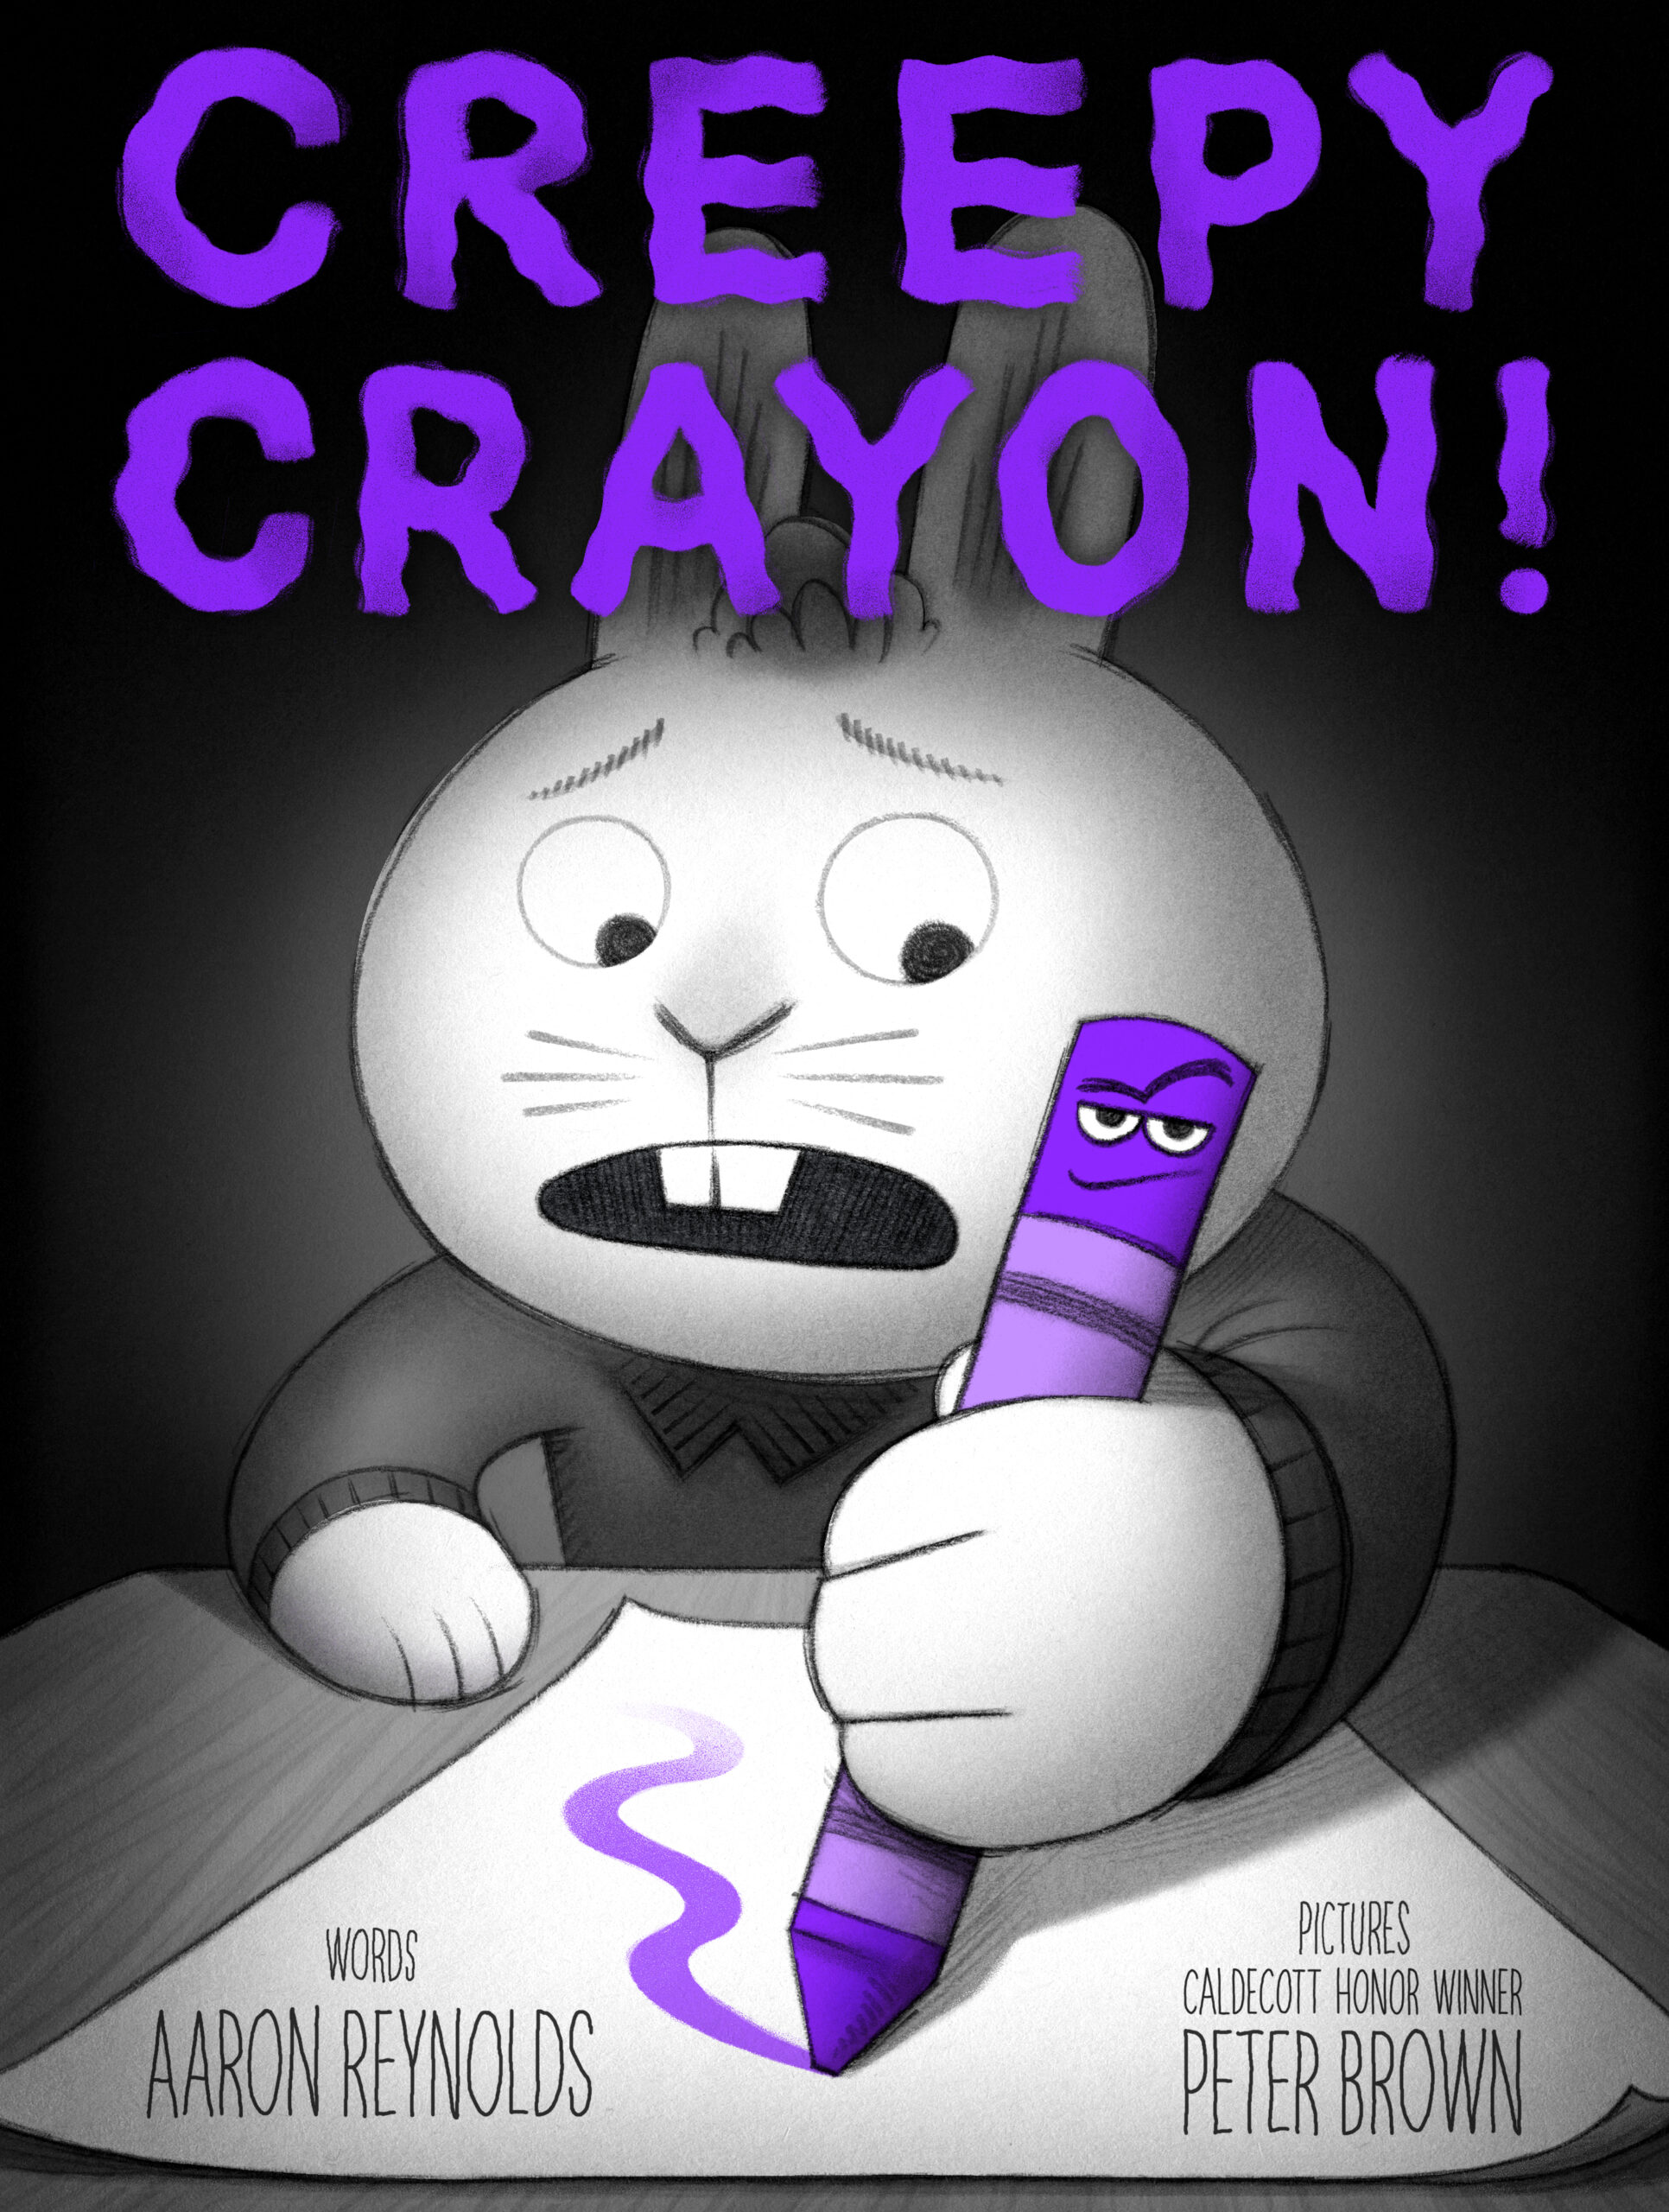 Creepy Crayon! Peter Brown